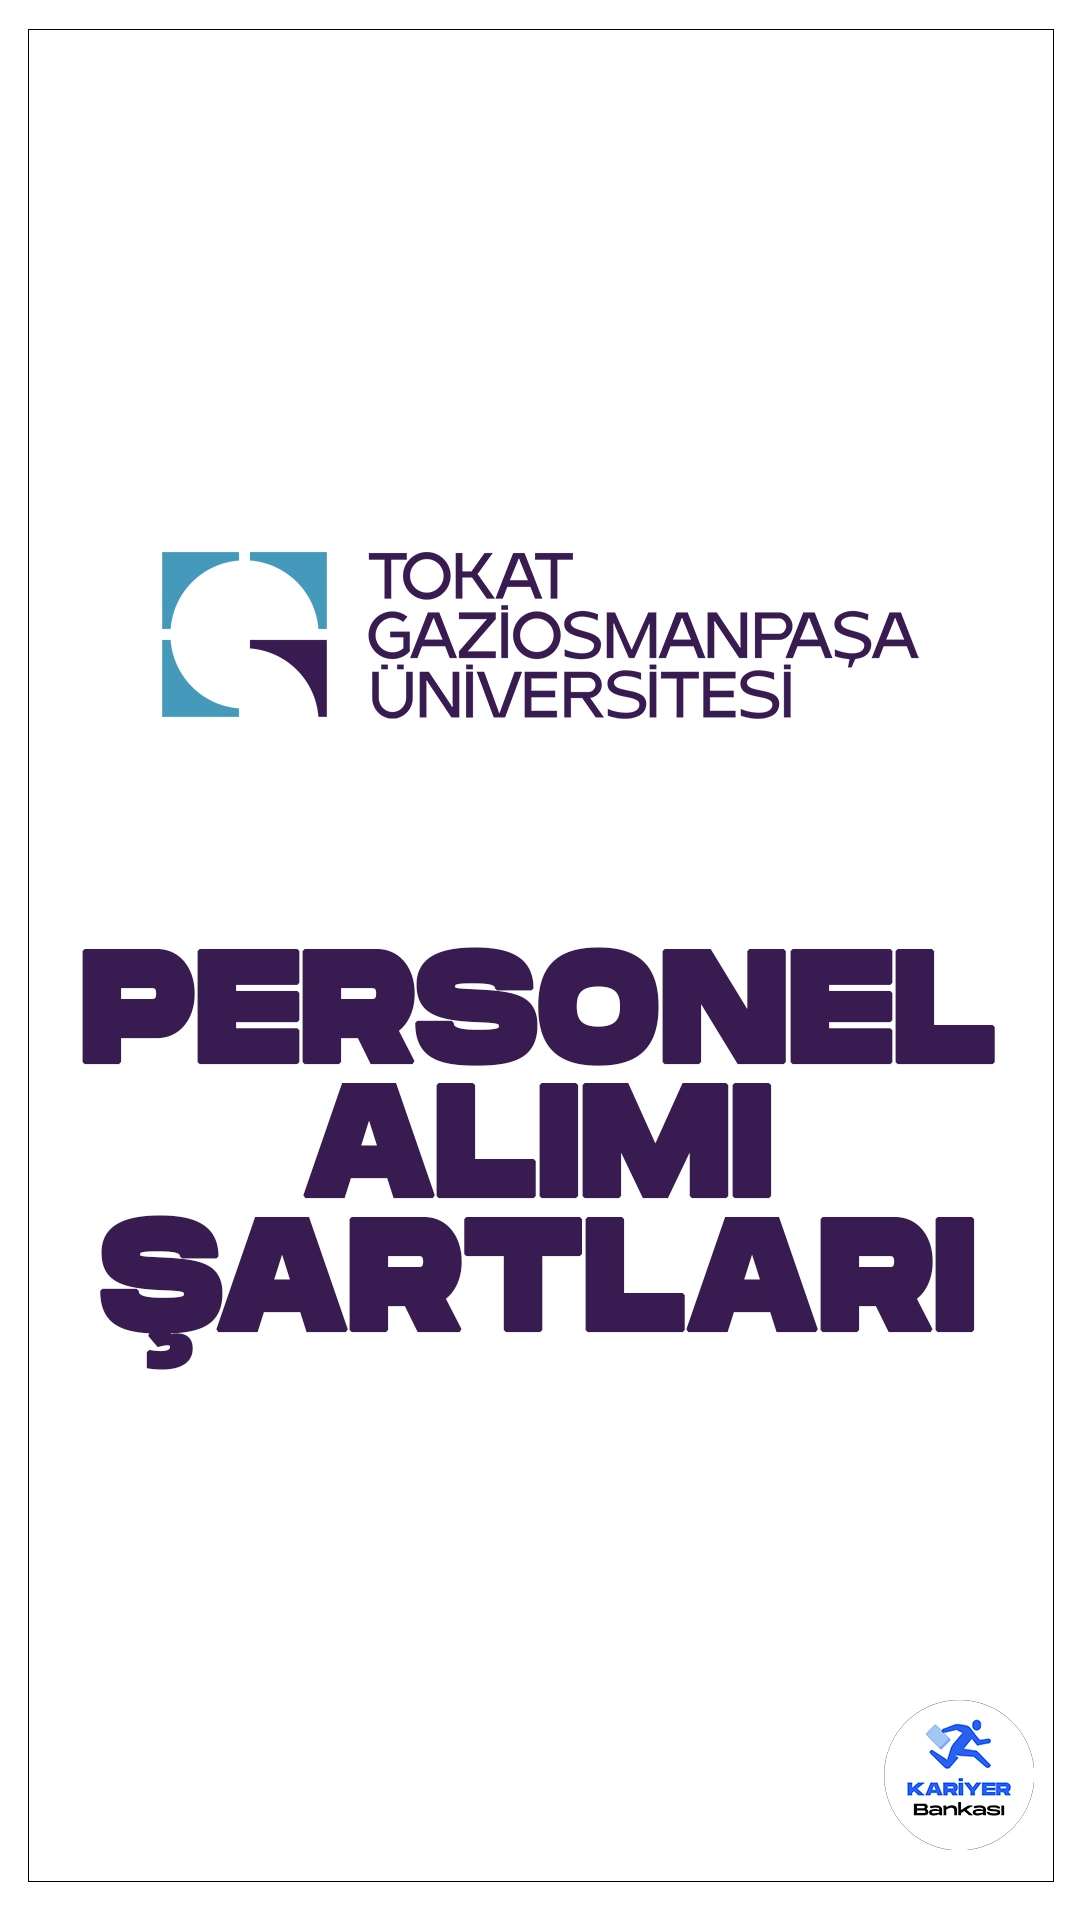 Tokat Gaziosmanpaşa Üniversitesi (TOGÜ) personel alımı başvuruları sürüyor. Başvuru şartları ver başvuru bilgilerine dair detaylar bu haberimizde.